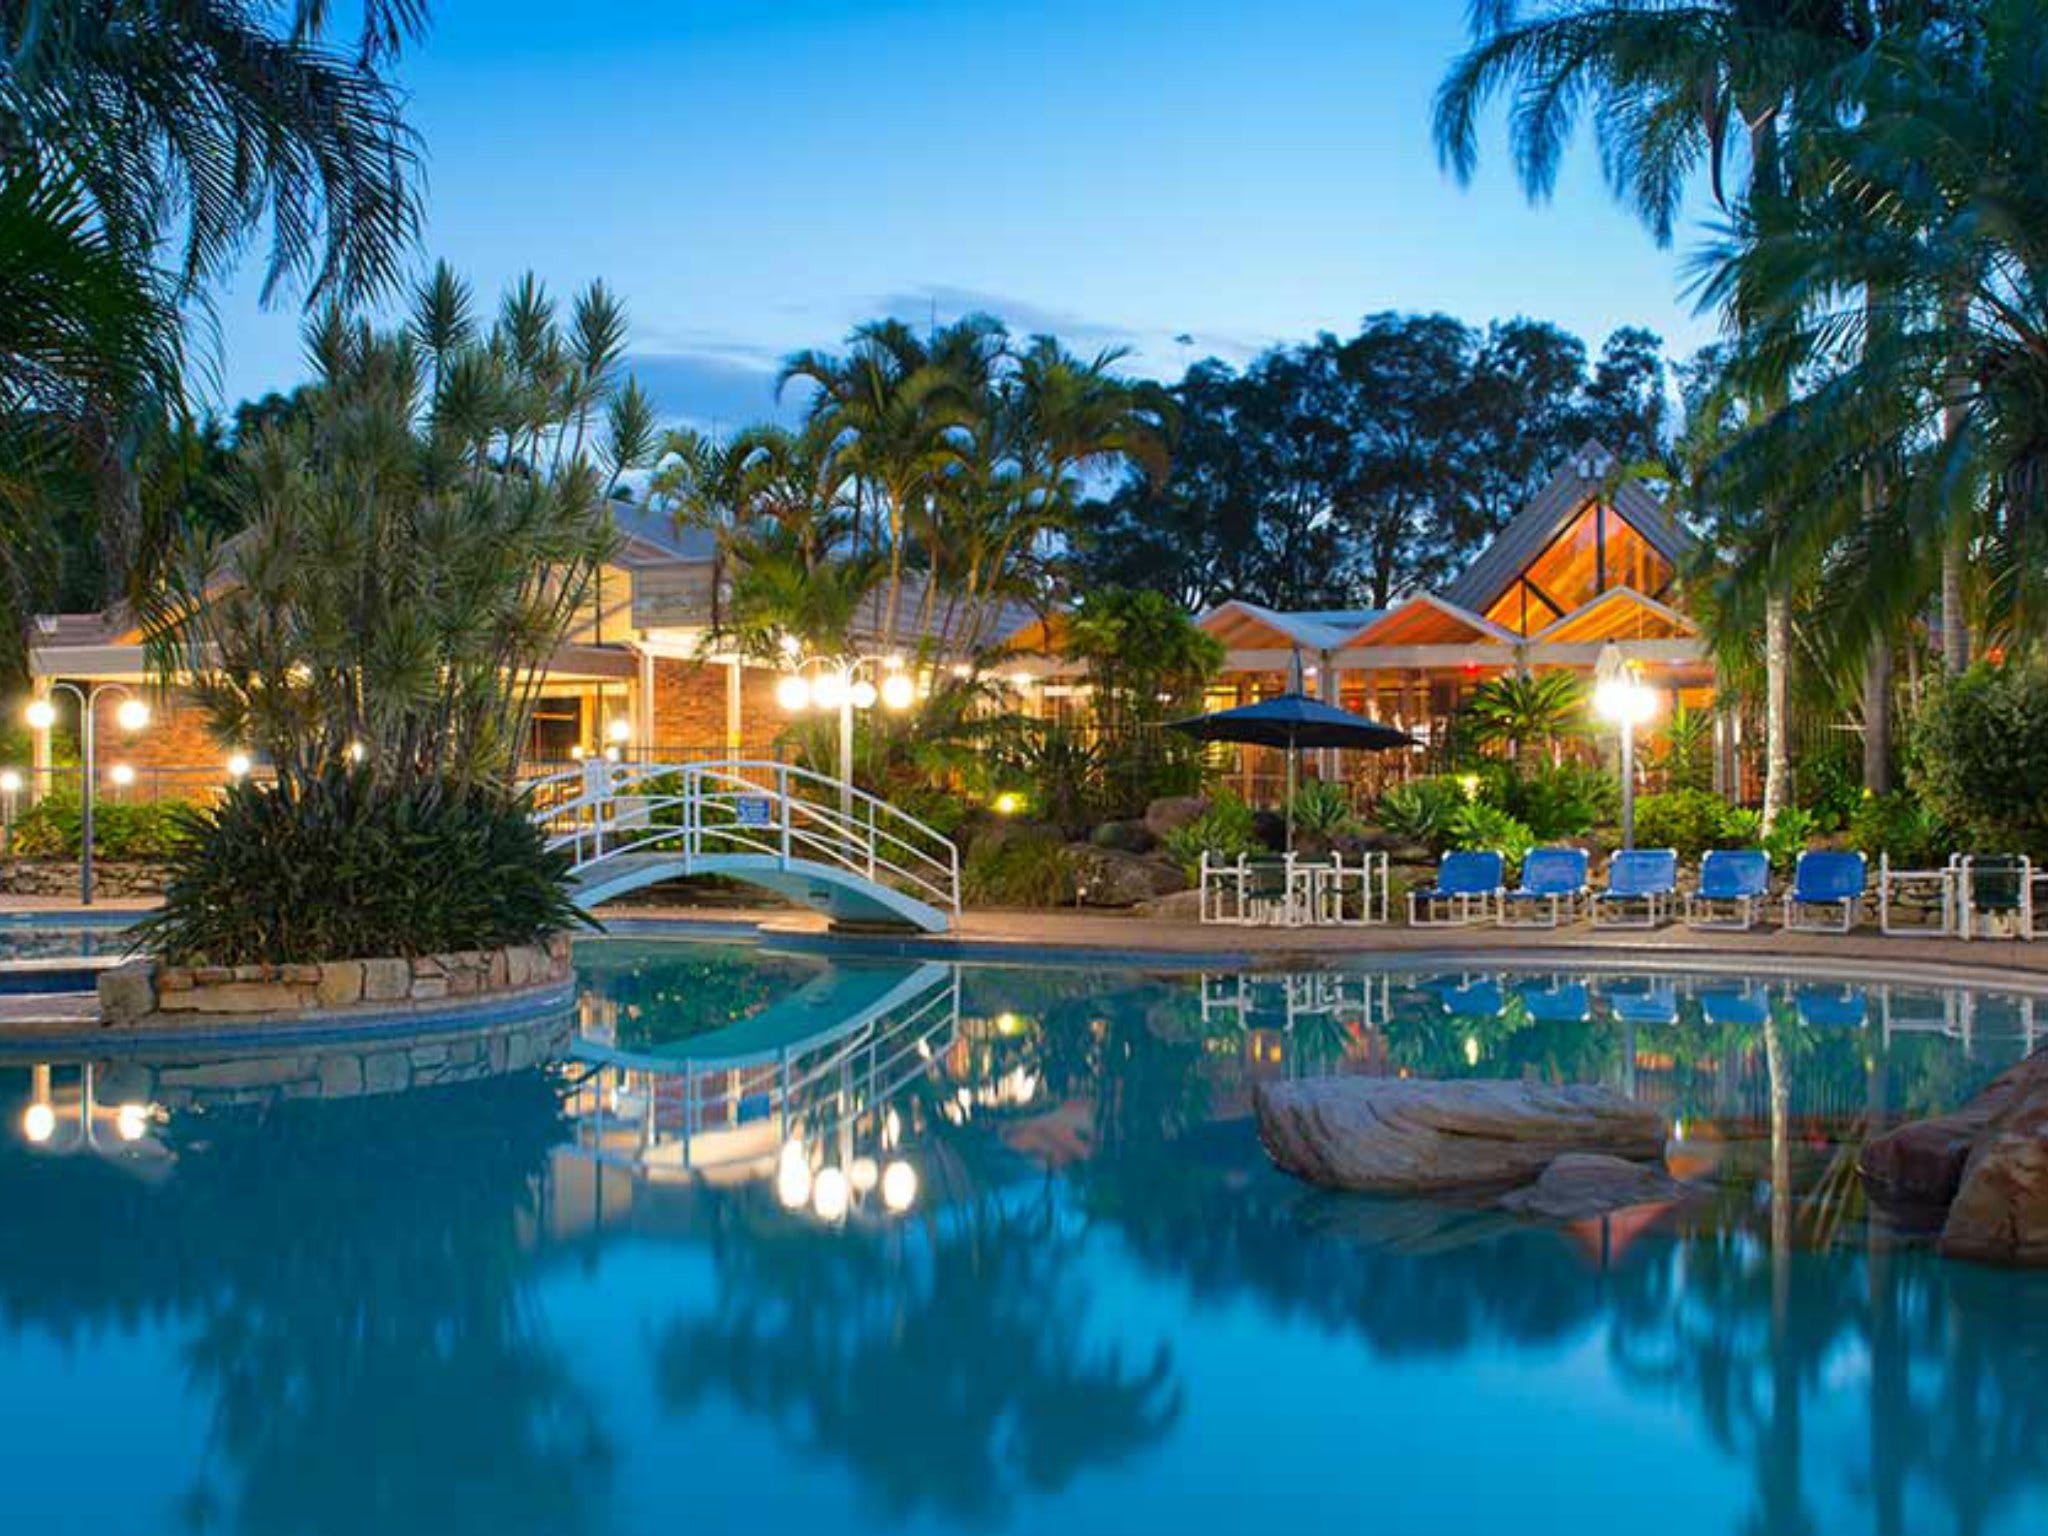 Boambee Bay Resort - Accommodation Mount Tamborine